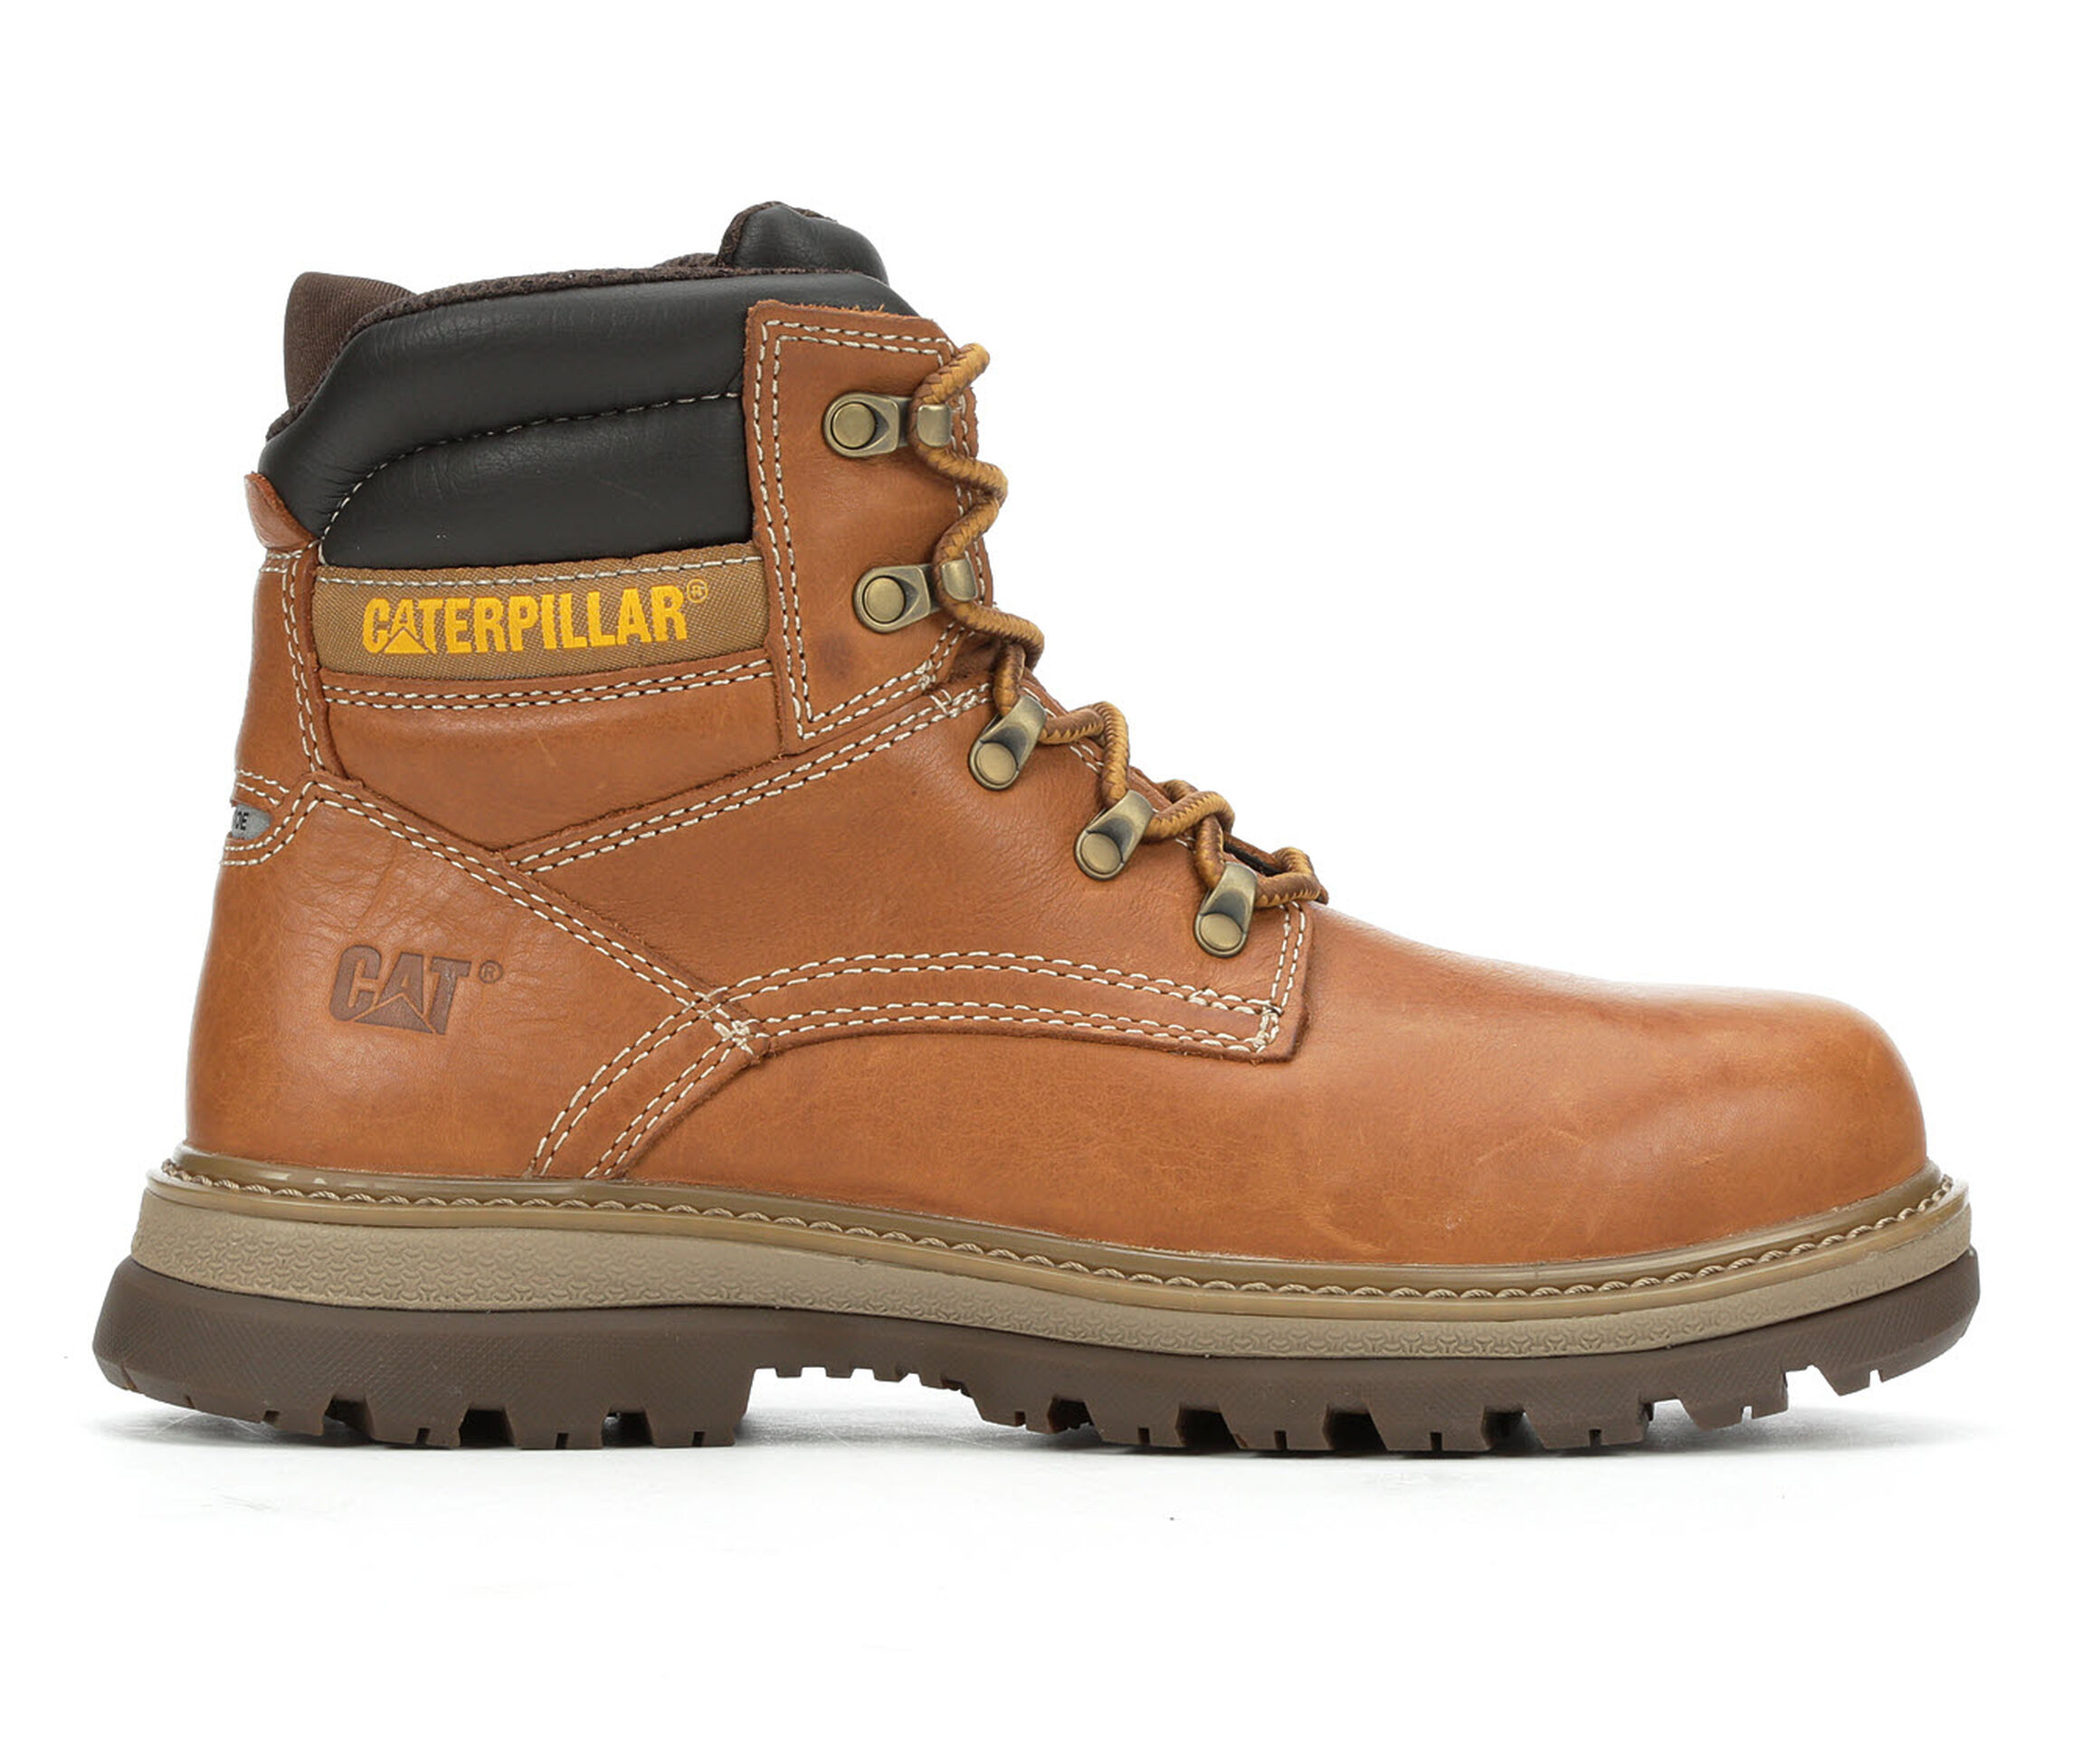 Caterpillar Fairbanks Steel Toe Men's Boots (Beige Faux Leather)